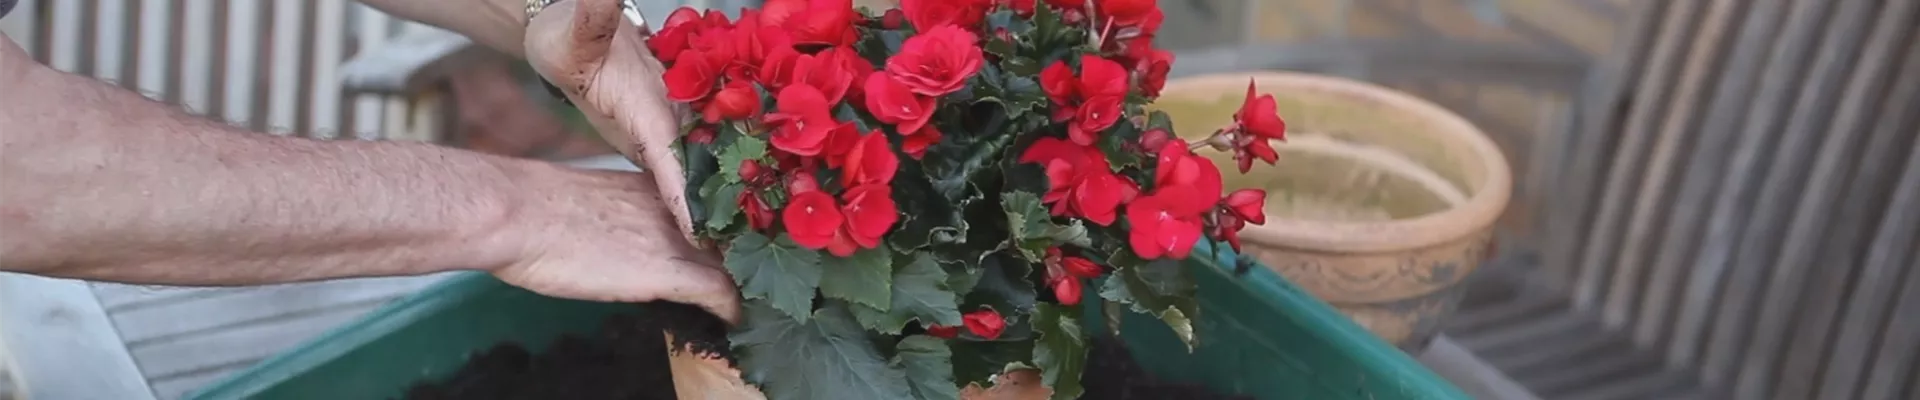 Blumenkübel - Bepflanzen mit Sommerblumen (thumbnail)